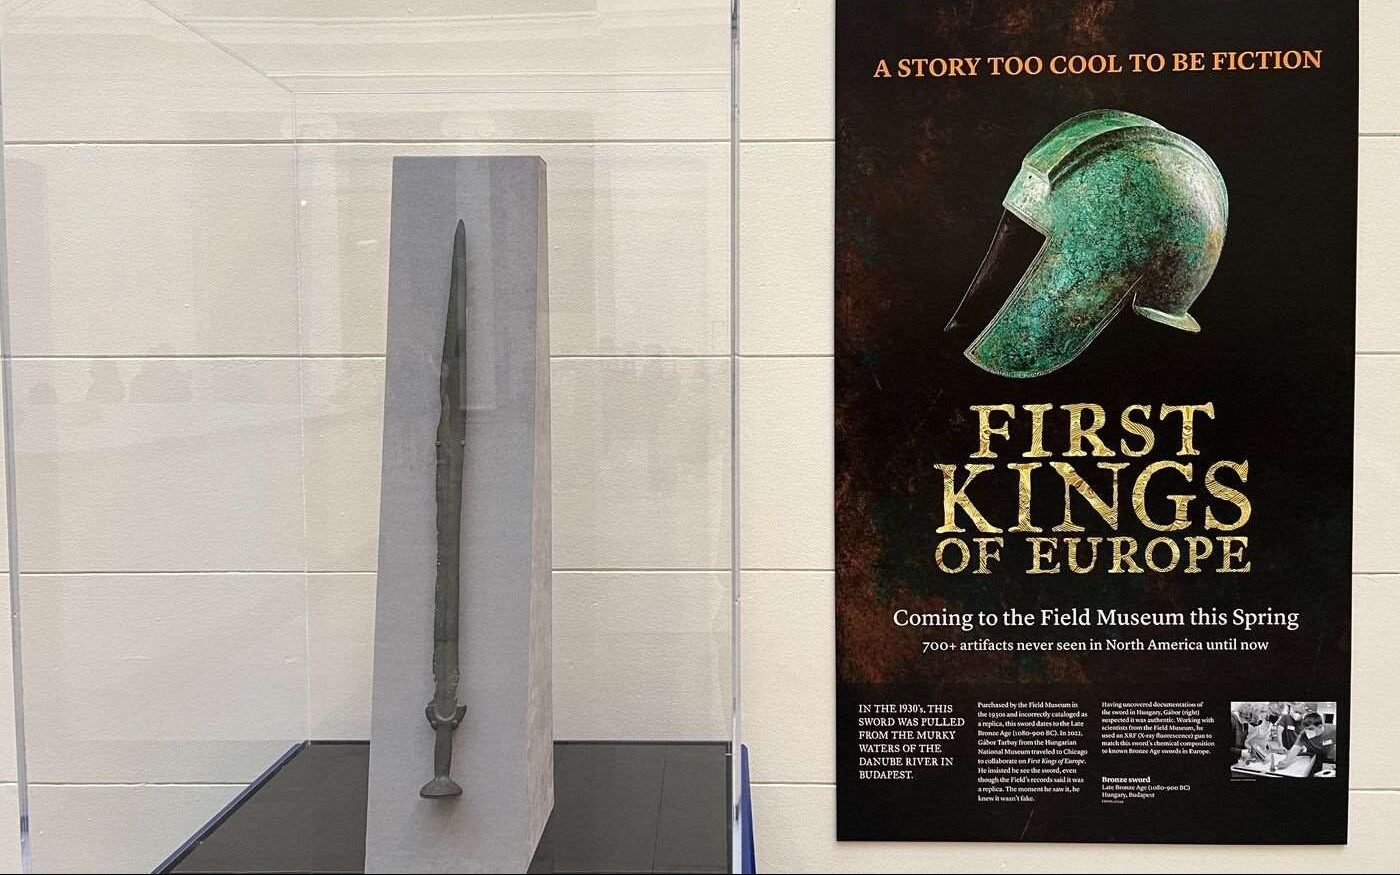 Dilabeli sebagai Replika oleh Museum Chicago, Ternyata Pedang Prajurit Berusia 3.000 Tahun